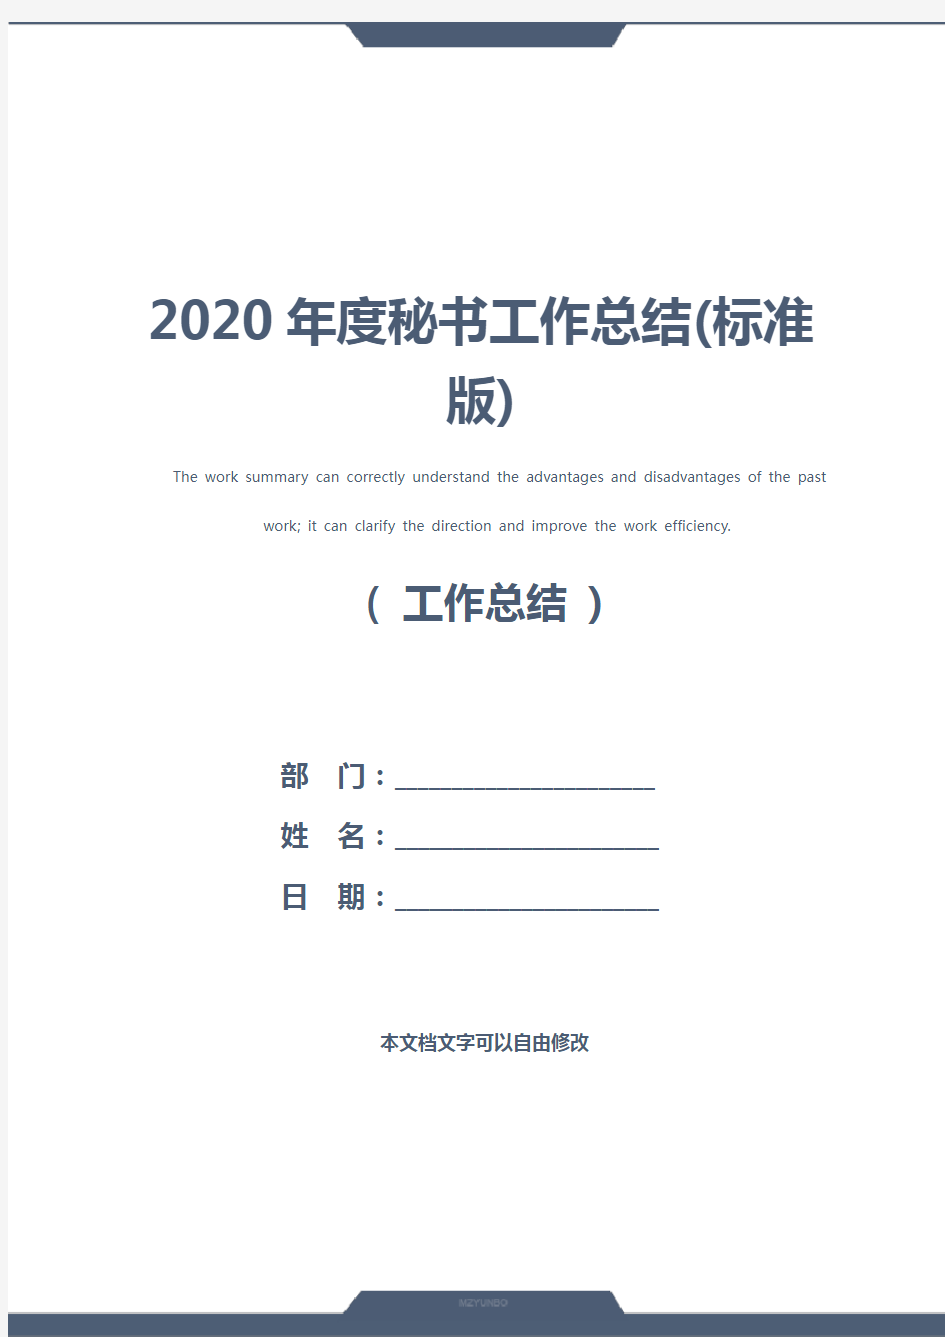 2020年度秘书工作总结(标准版)